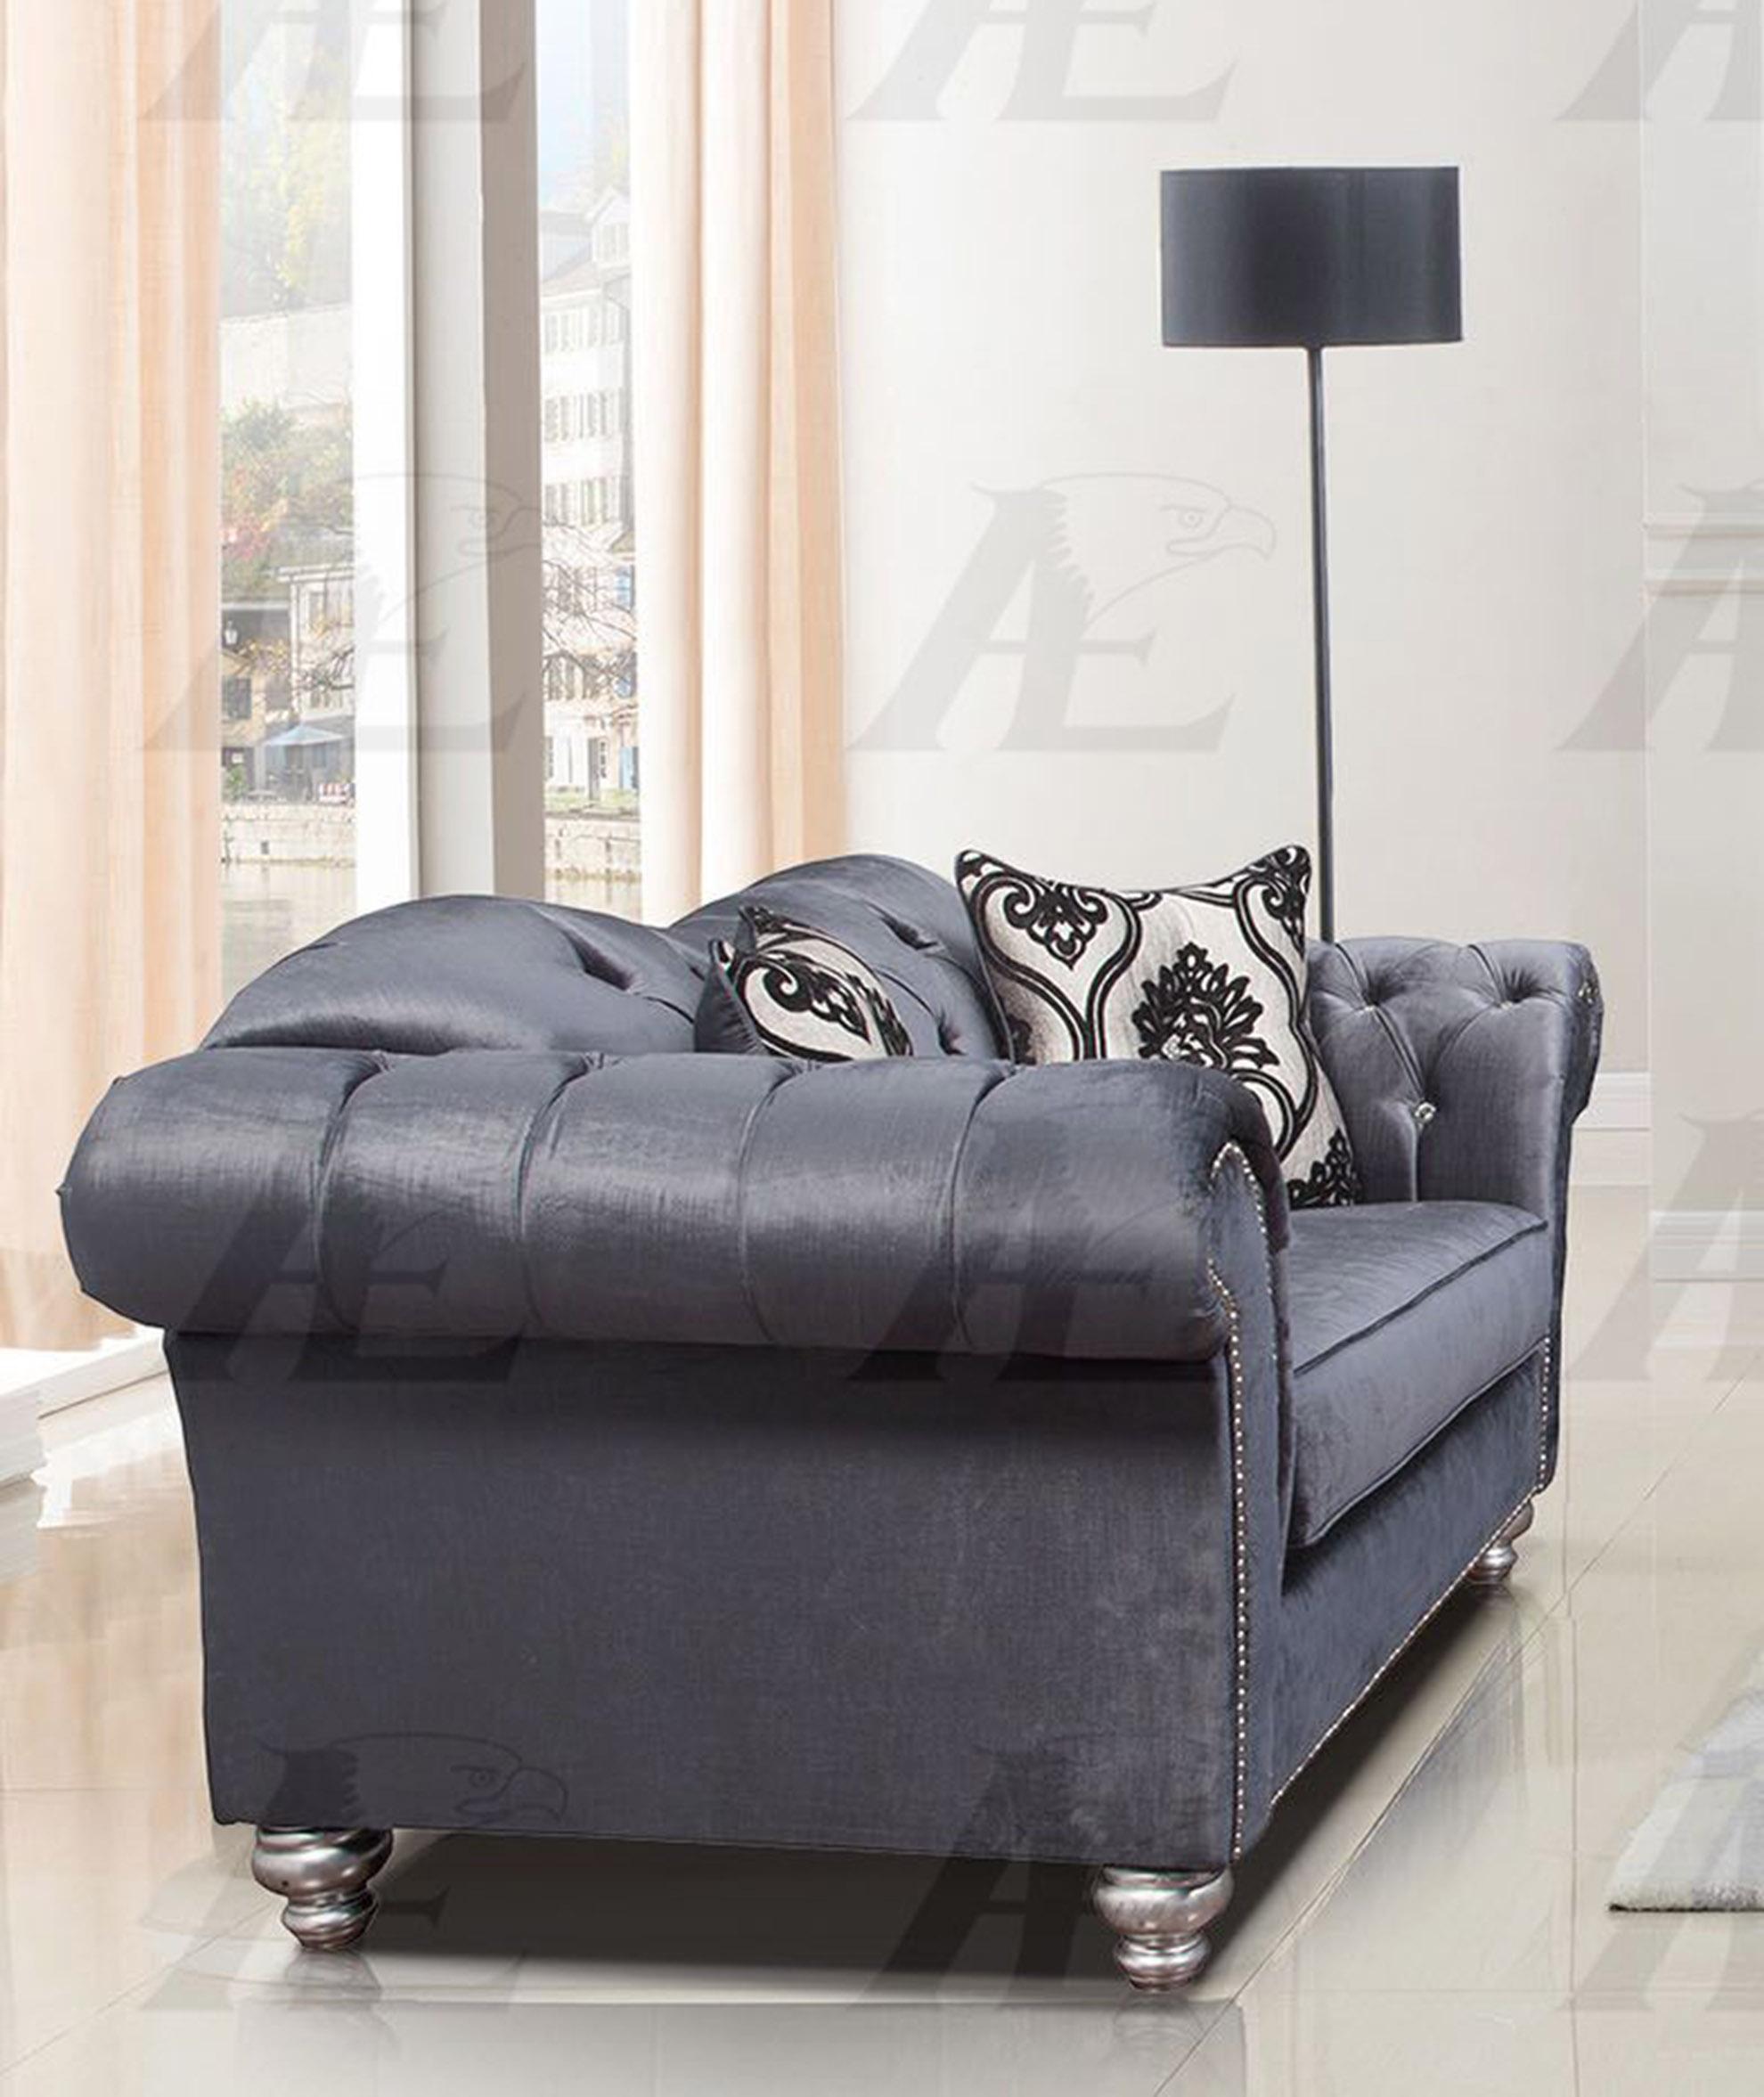 

    
American Eagle Furniture AE2600-GB Sofa Blue AE2600-GB -Sofa
